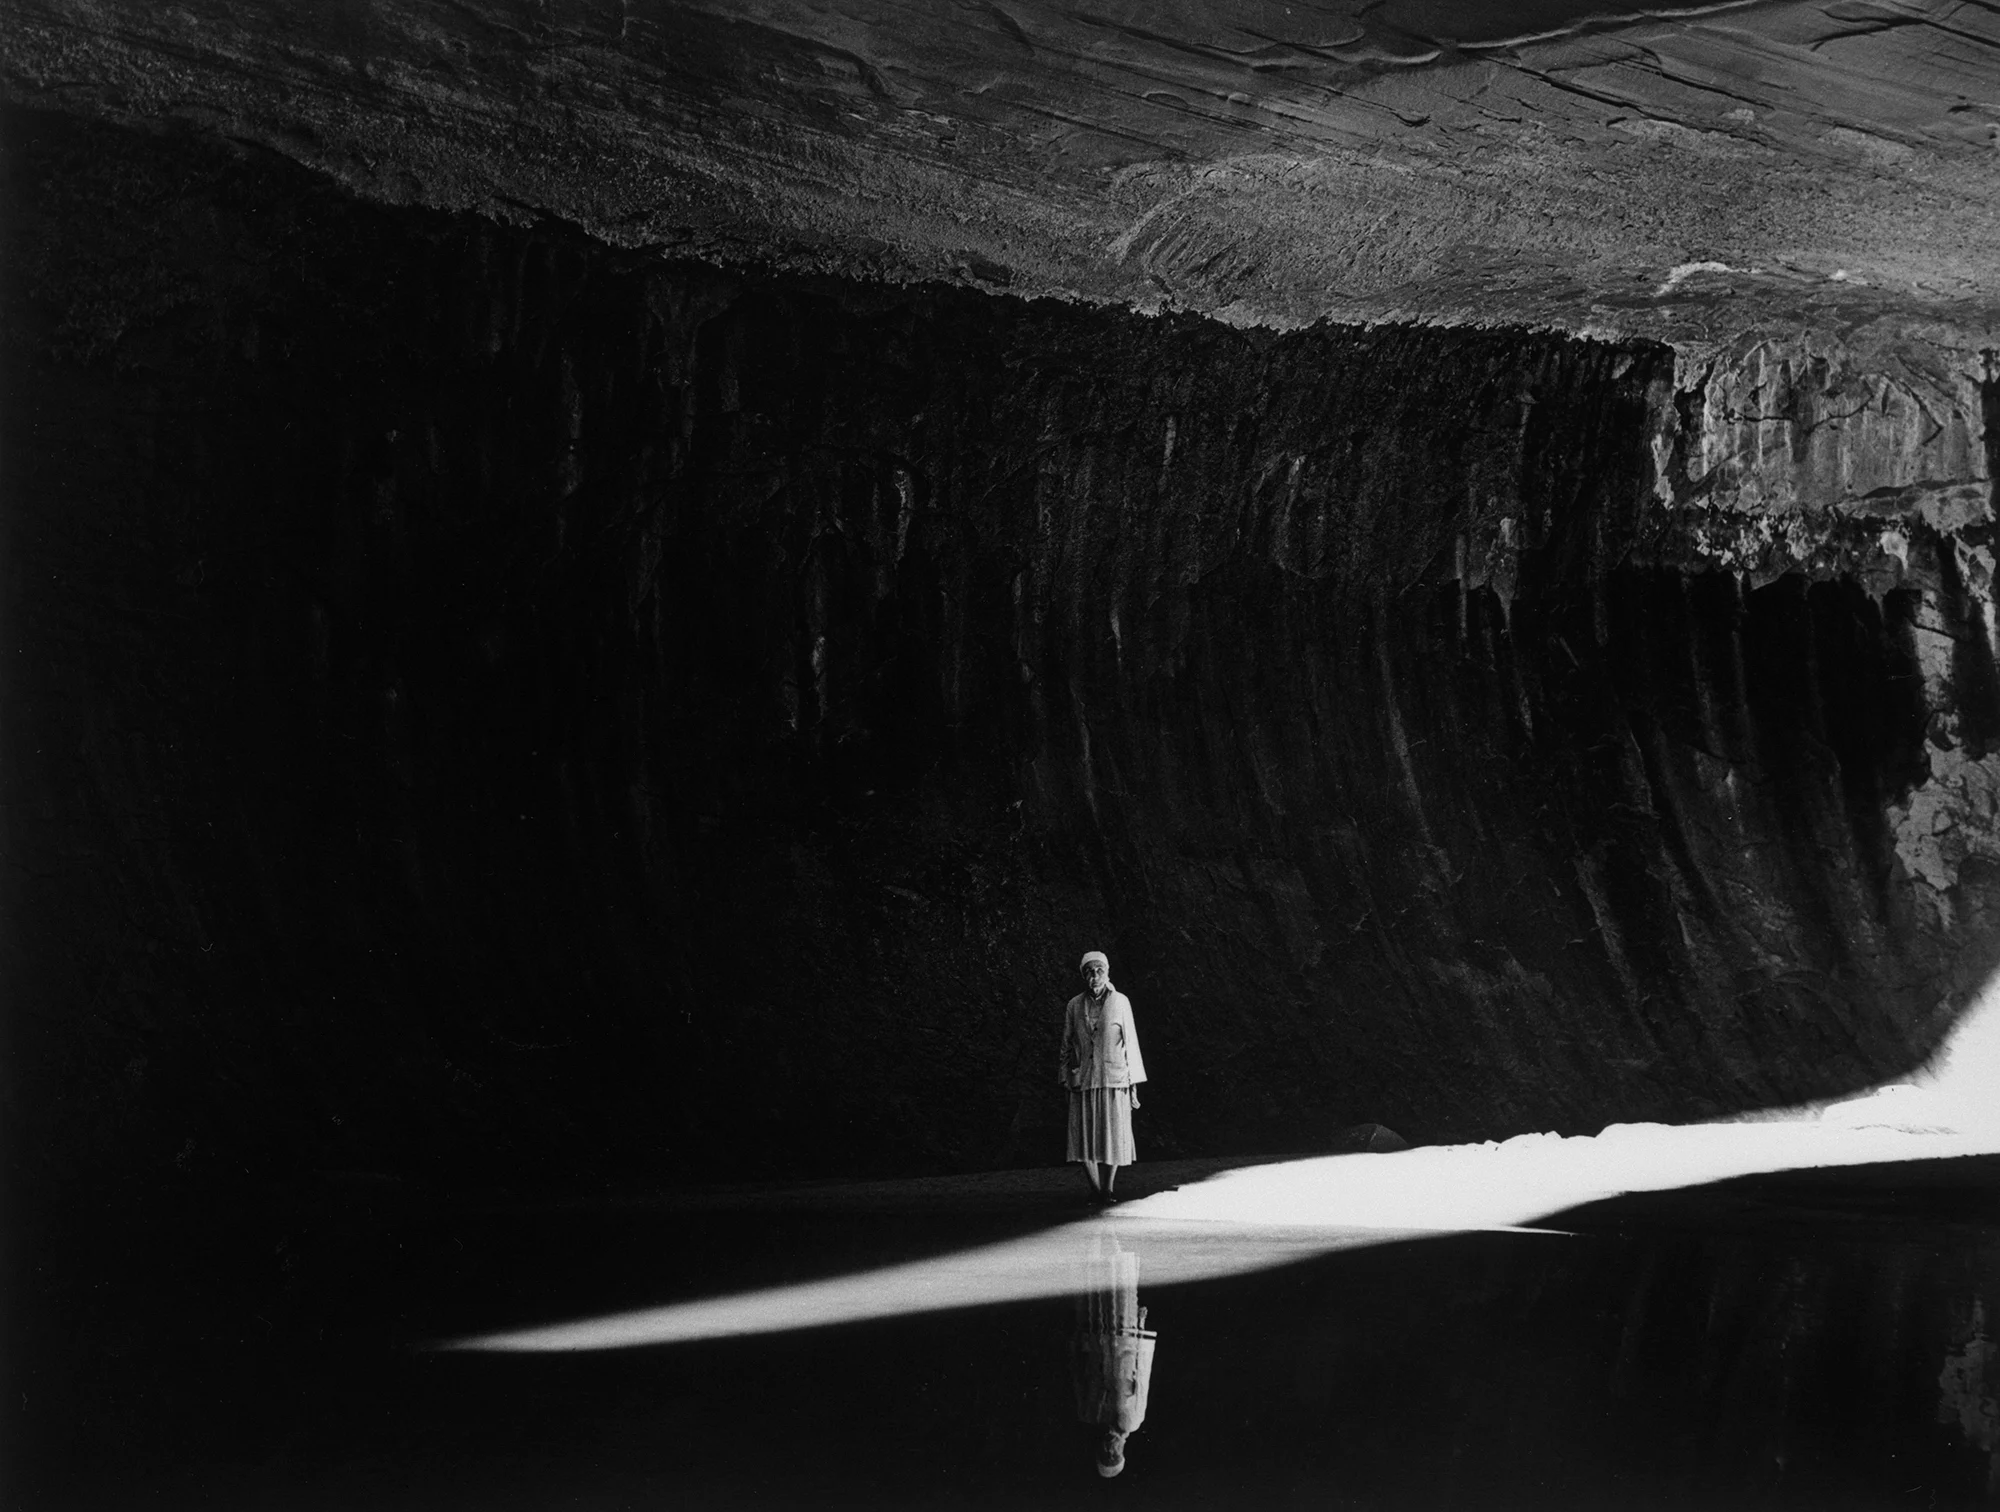 Georgia O'Keeffe in Twilight Canyon, 1964